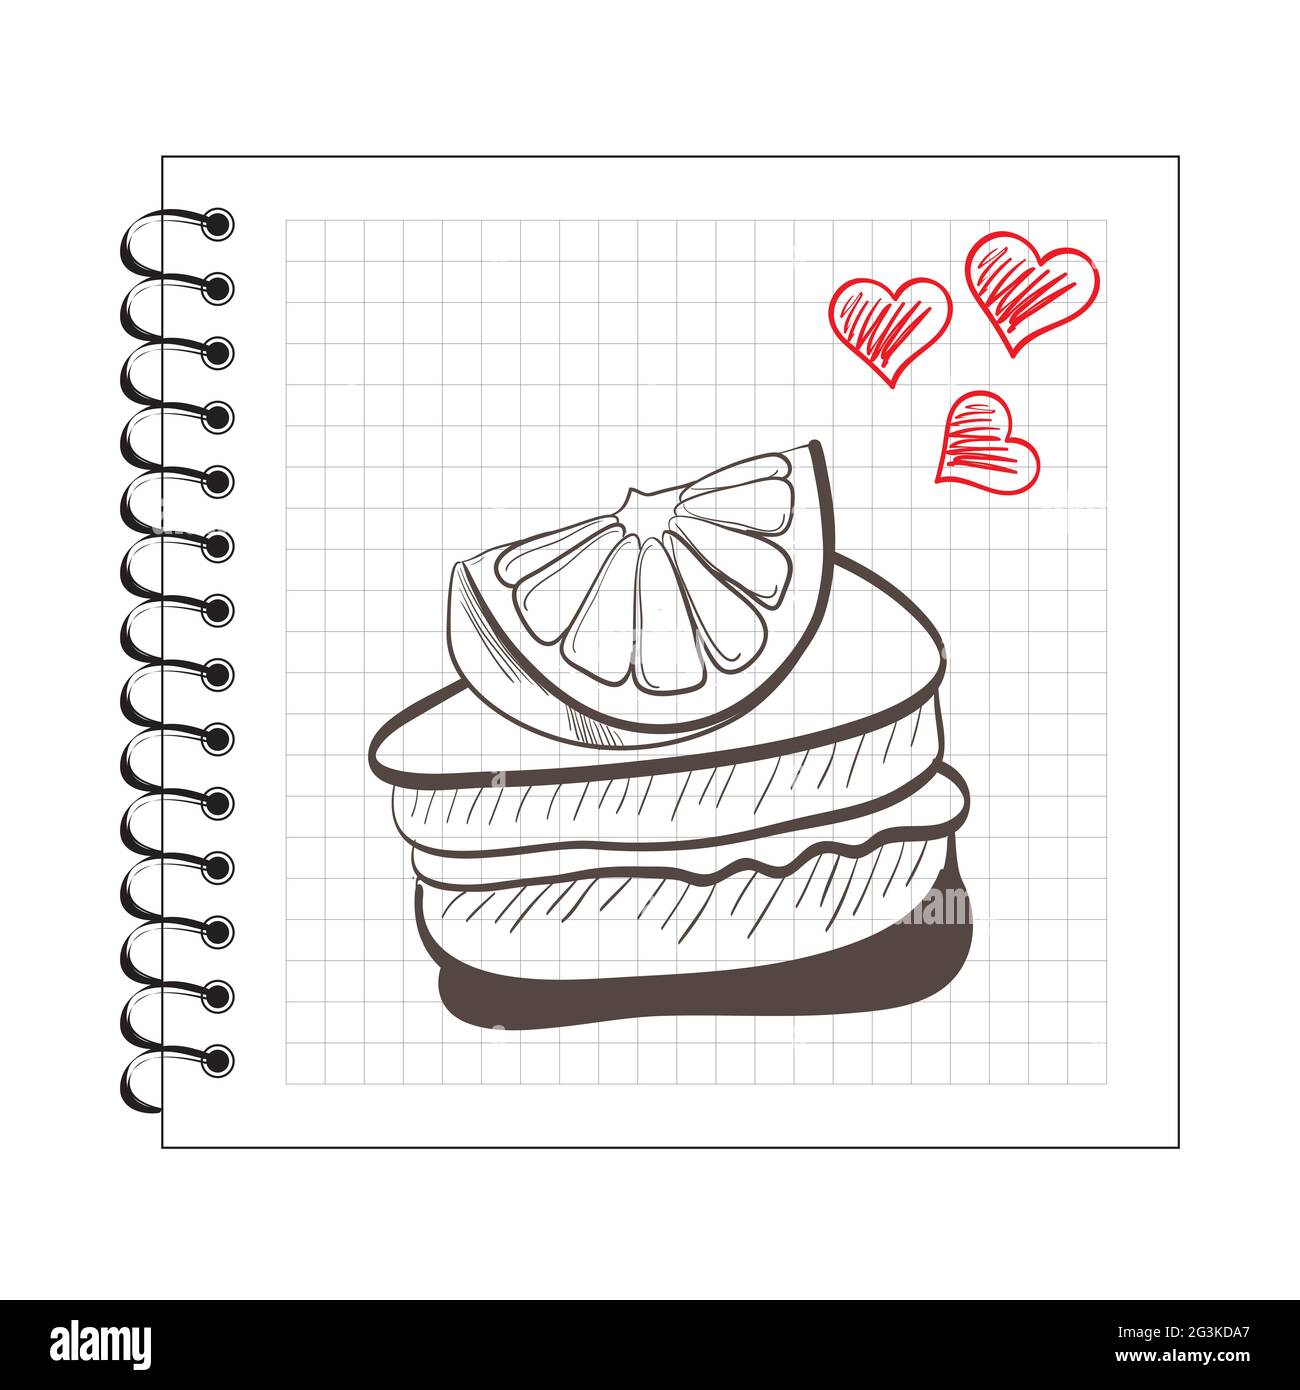 Ilustración de una rodaja de torta de color naranja en papel de cuaderno Foto de stock